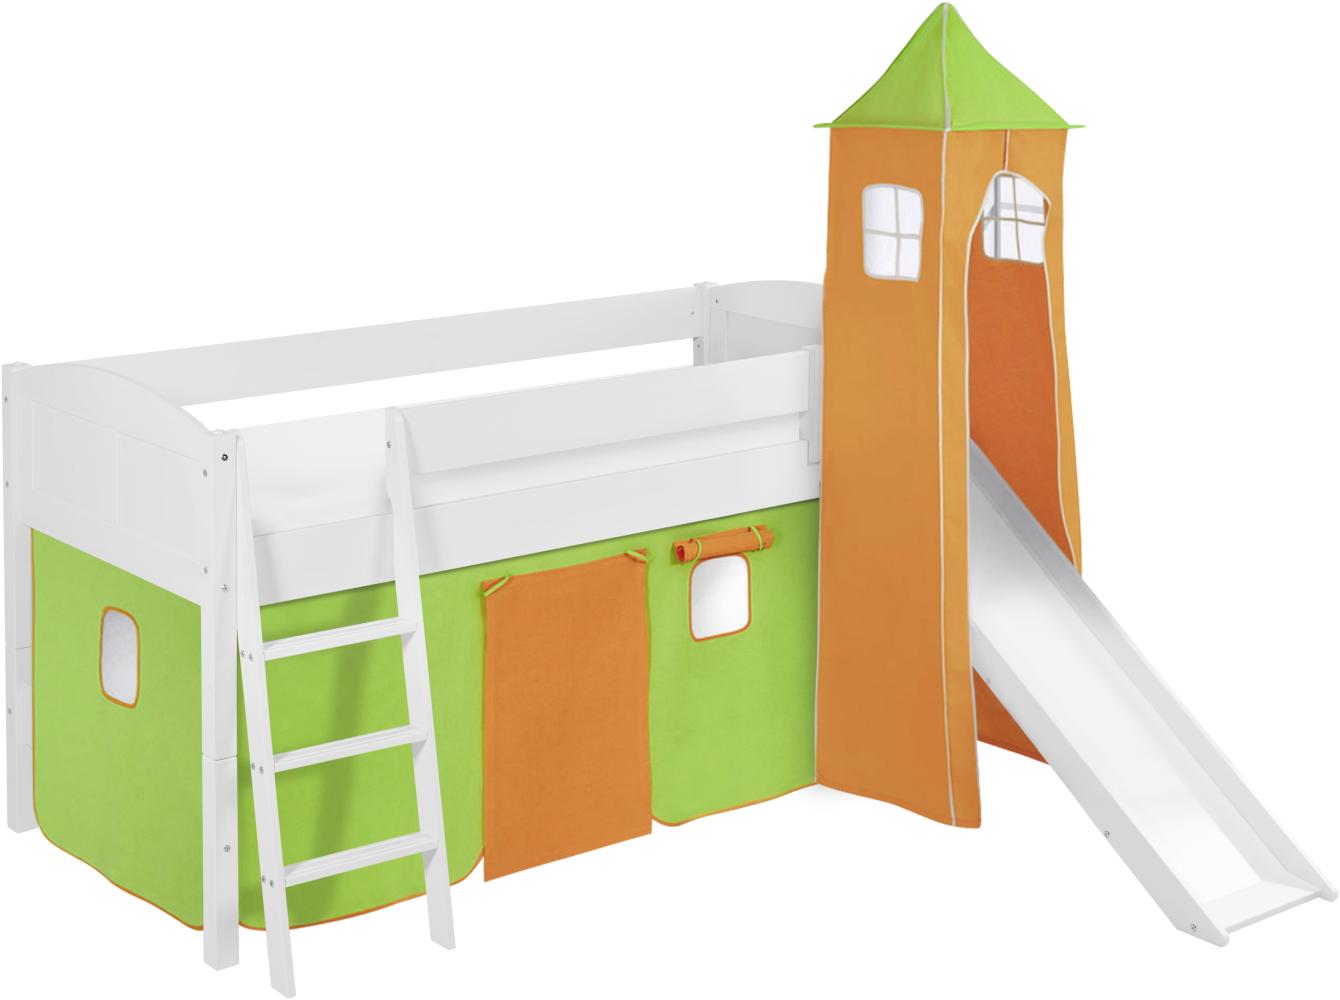 Lilokids 'Ida 4106' Spielbett 90 x 200 cm, Grün Orange, Kiefer massiv, mit Turm, Rutsche und Vorhang Bild 1